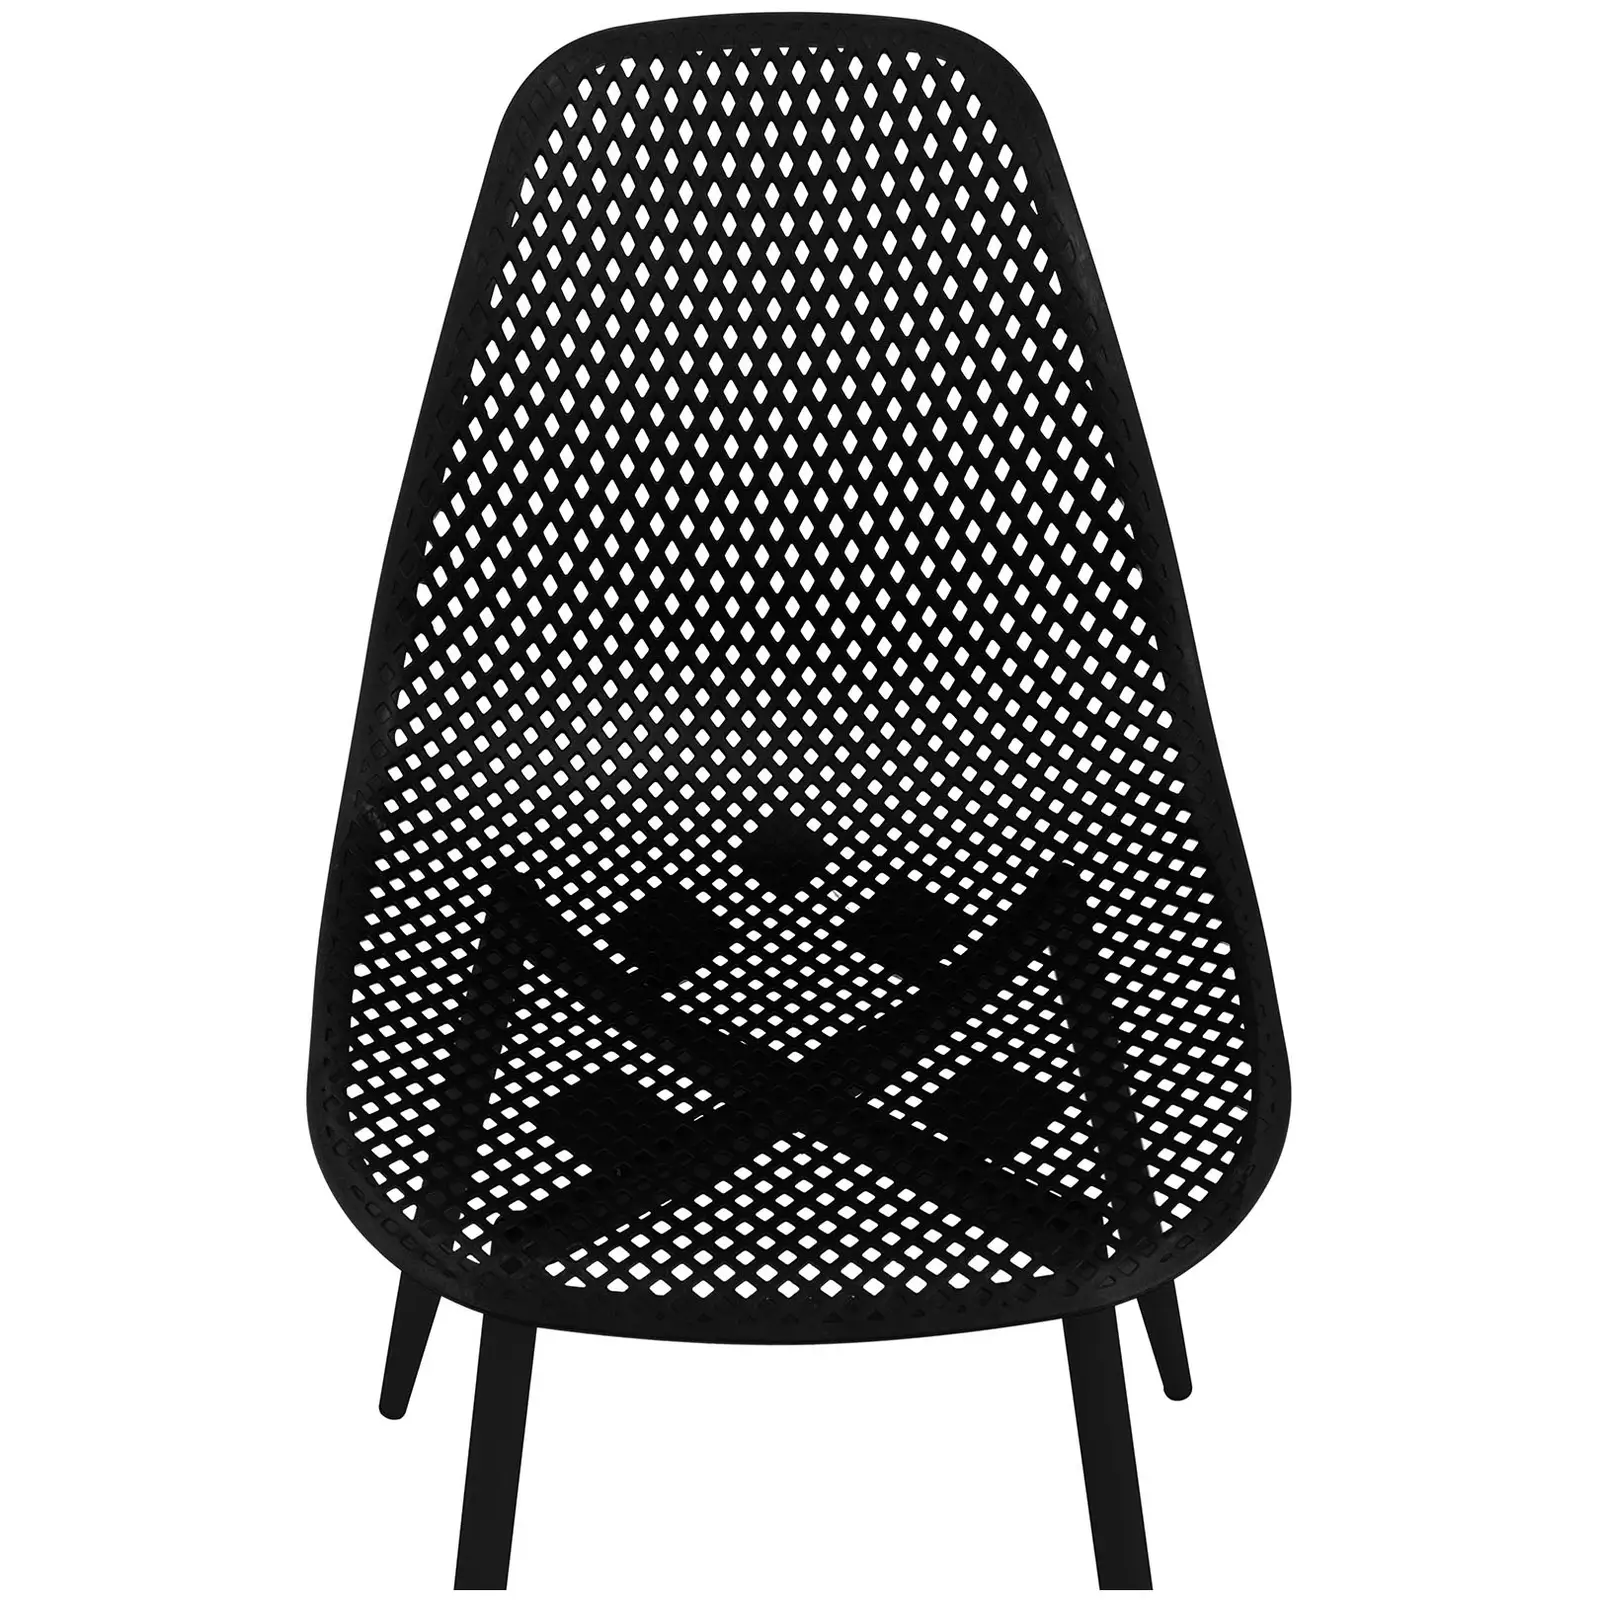 Chaise - Lot de 4 - 150 kg max. - Surface d'assise de 52 x 46,5 cm - Coloris noir - 5